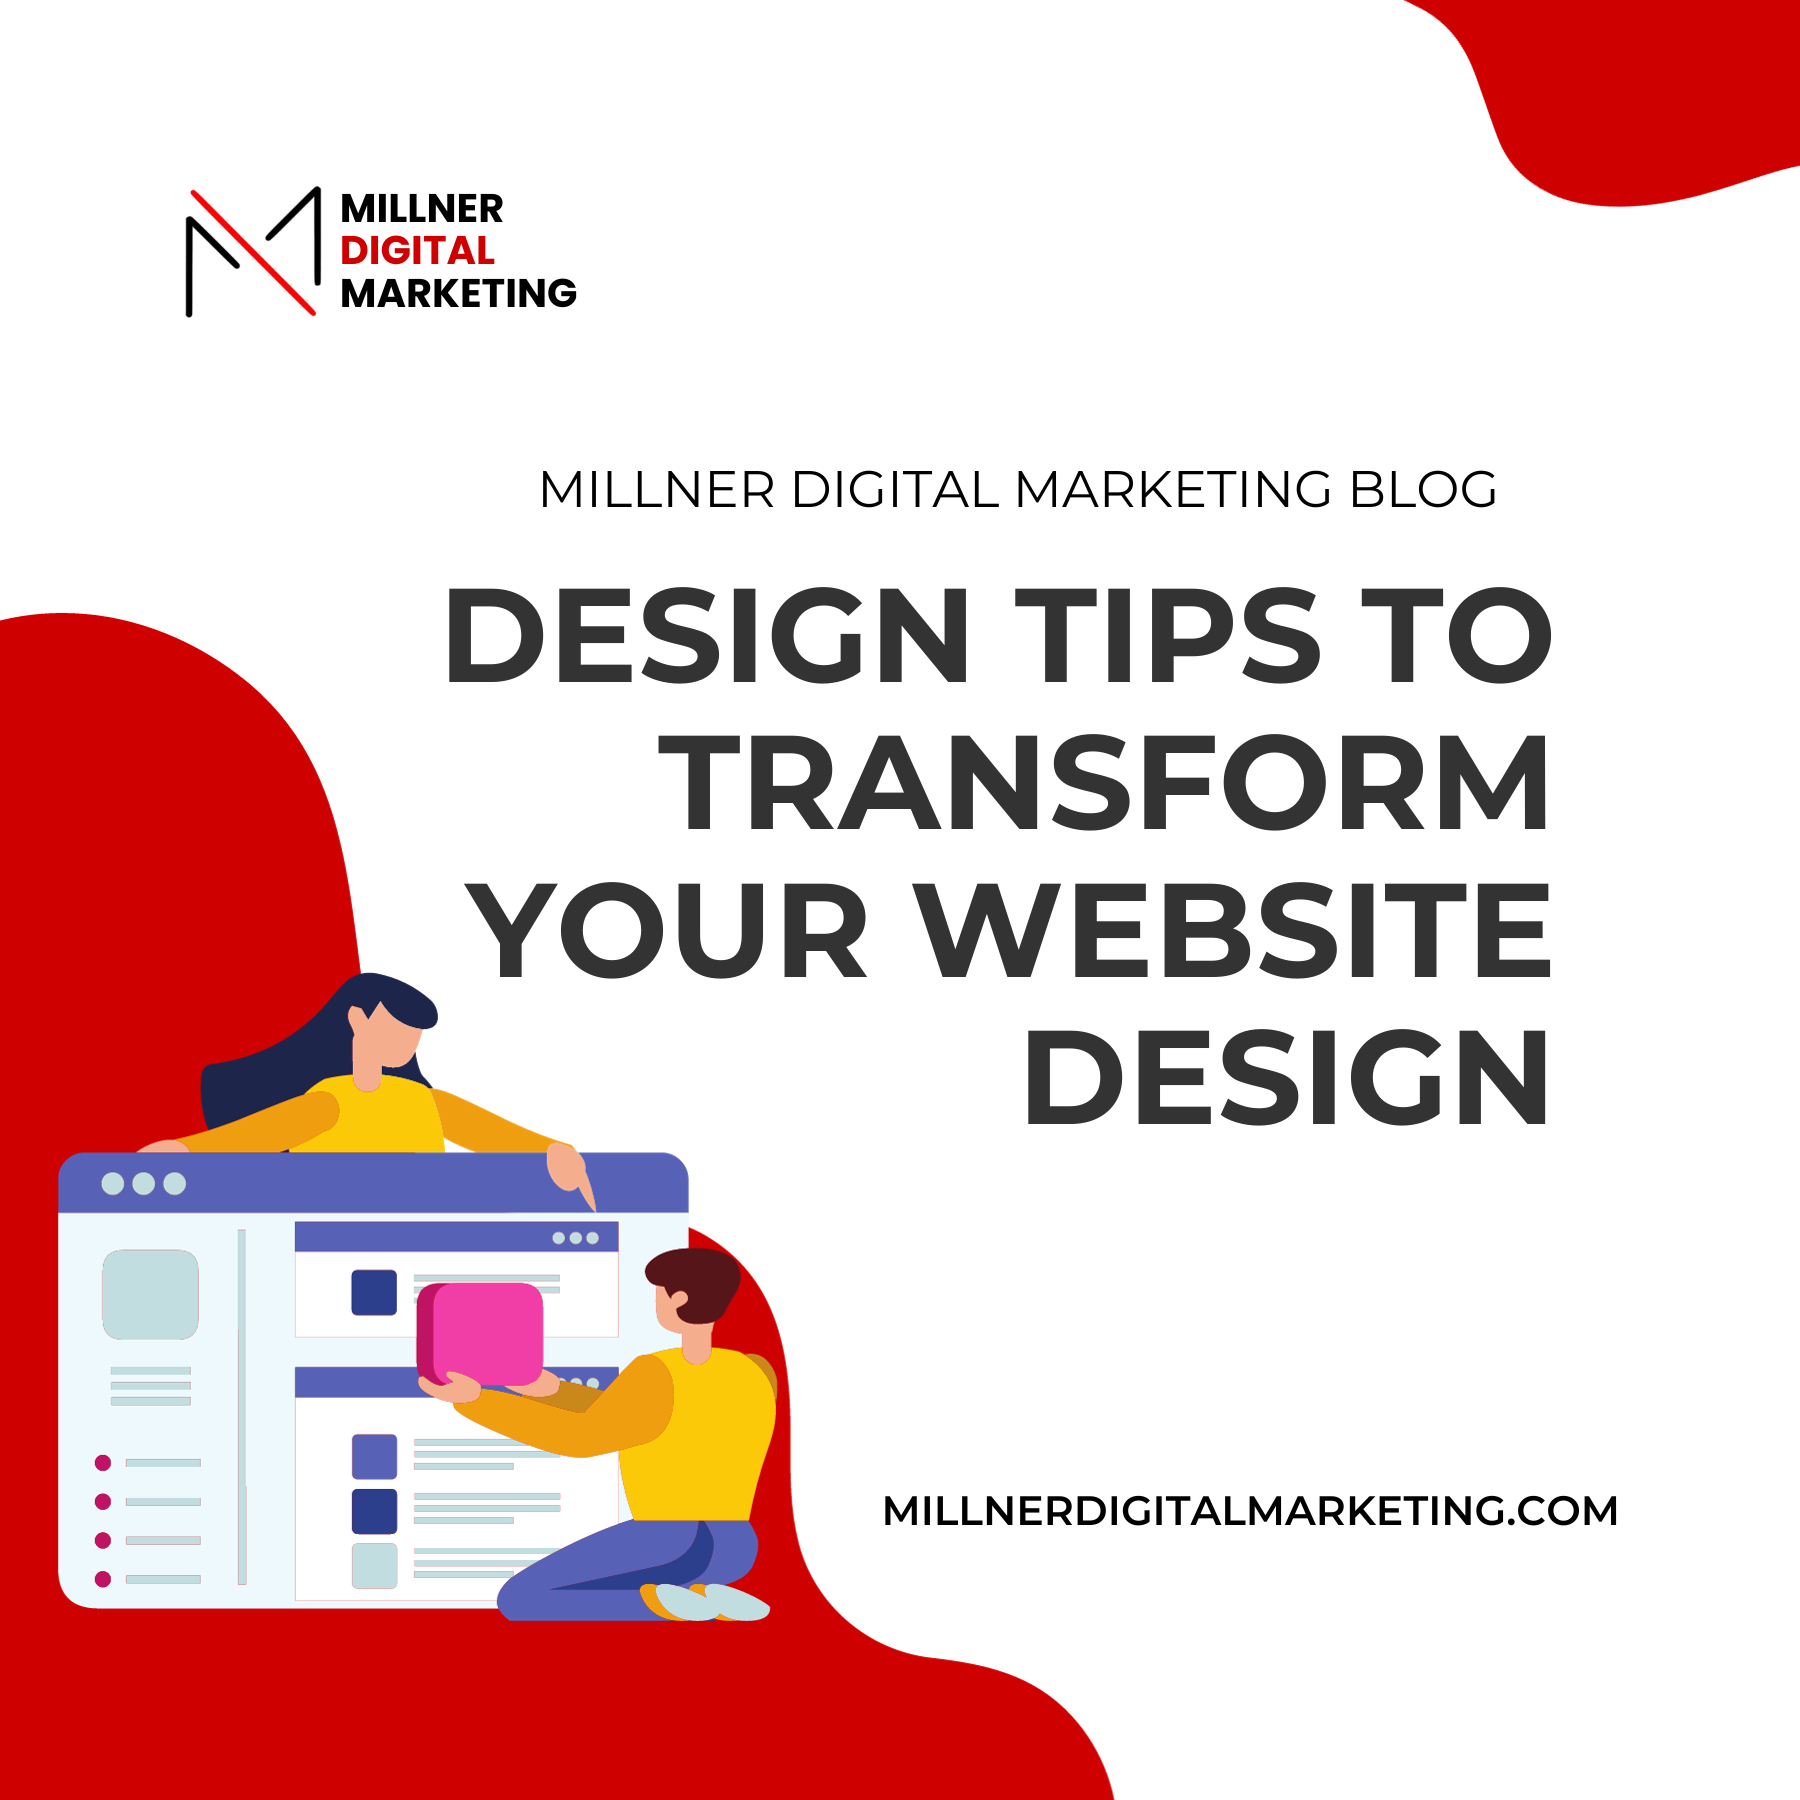 Millner Digital Marketing Blog Post Thumbnail: Design Tips to Transform your website design